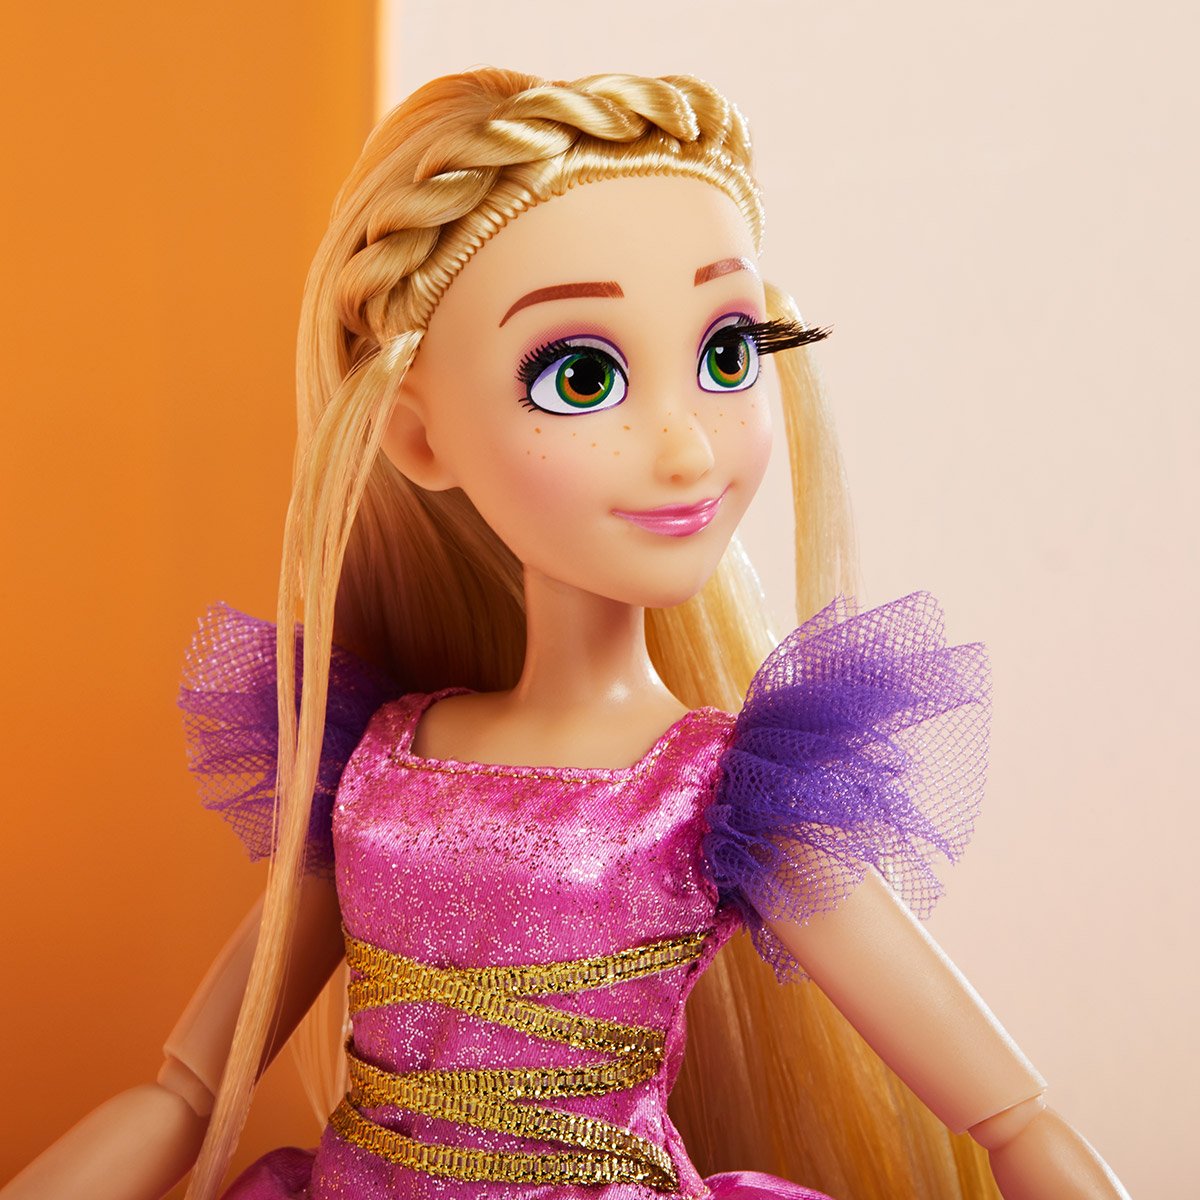 Disney Princesses - Poupée Raiponce longue chevelure - La Grande Récré